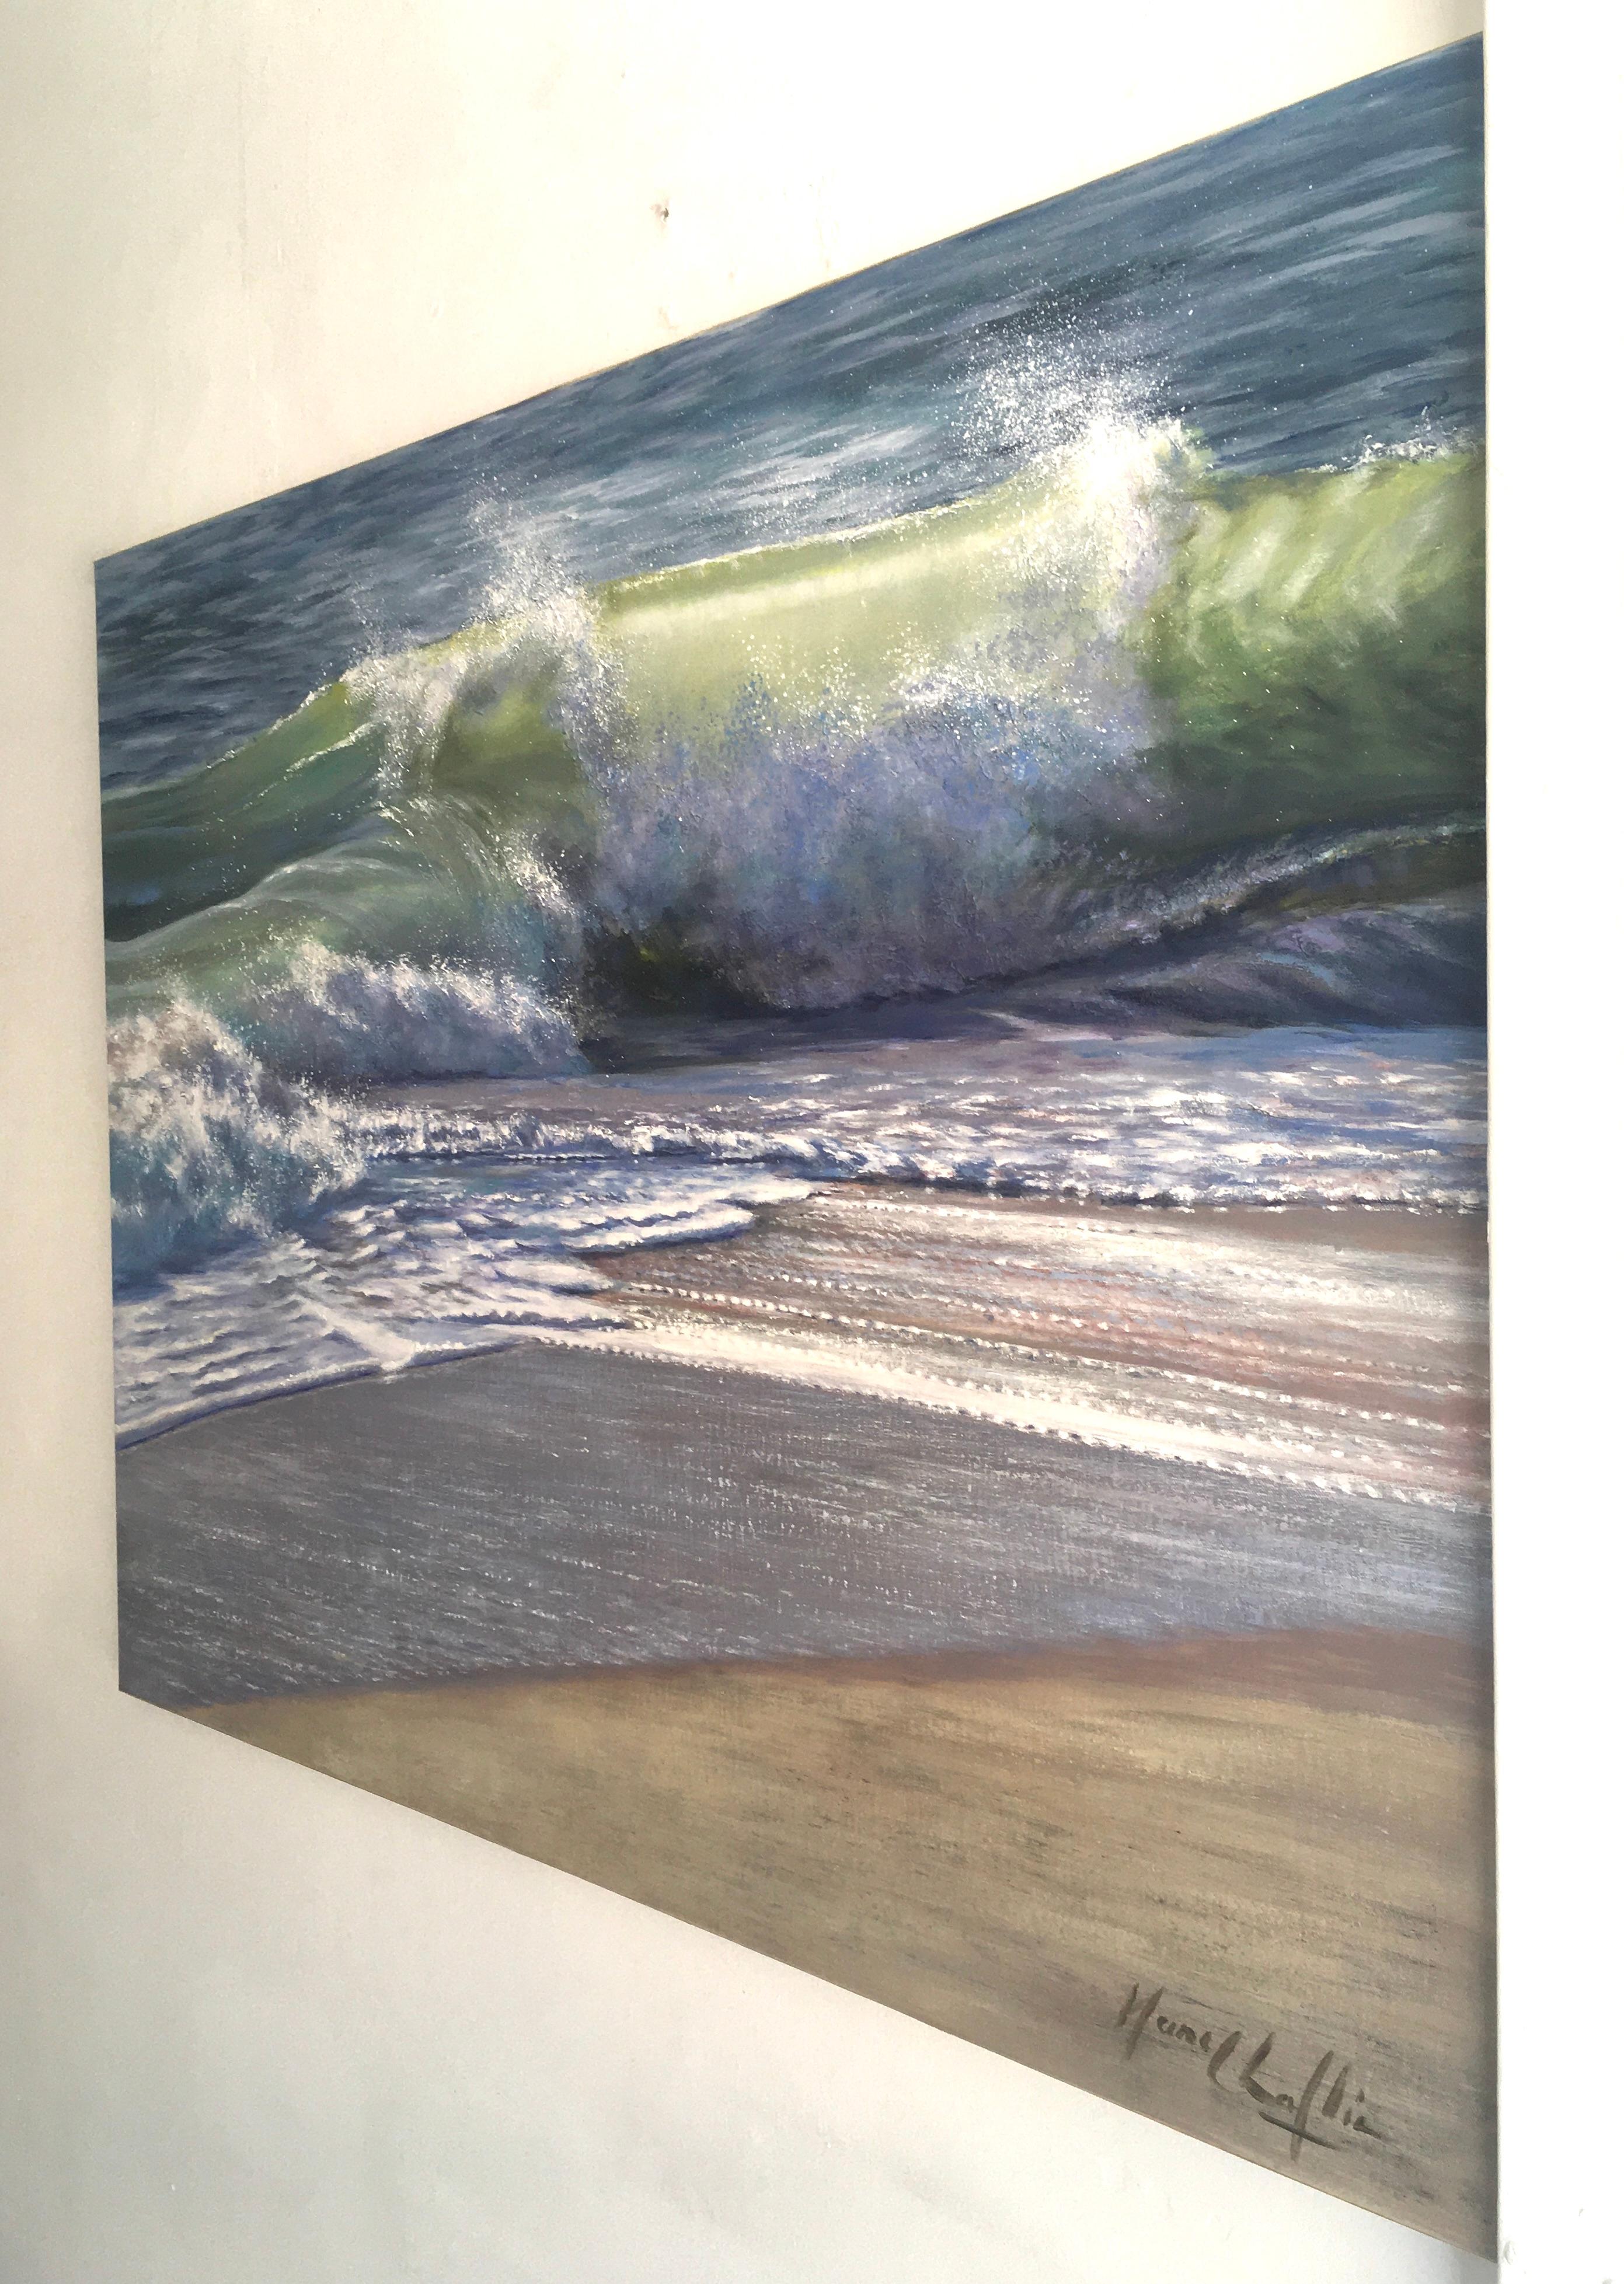 Blues-original réalisme moderne peinture de paysage marin-océan-œuvre d'art-art contemporain - Painting de Mary Chaplin